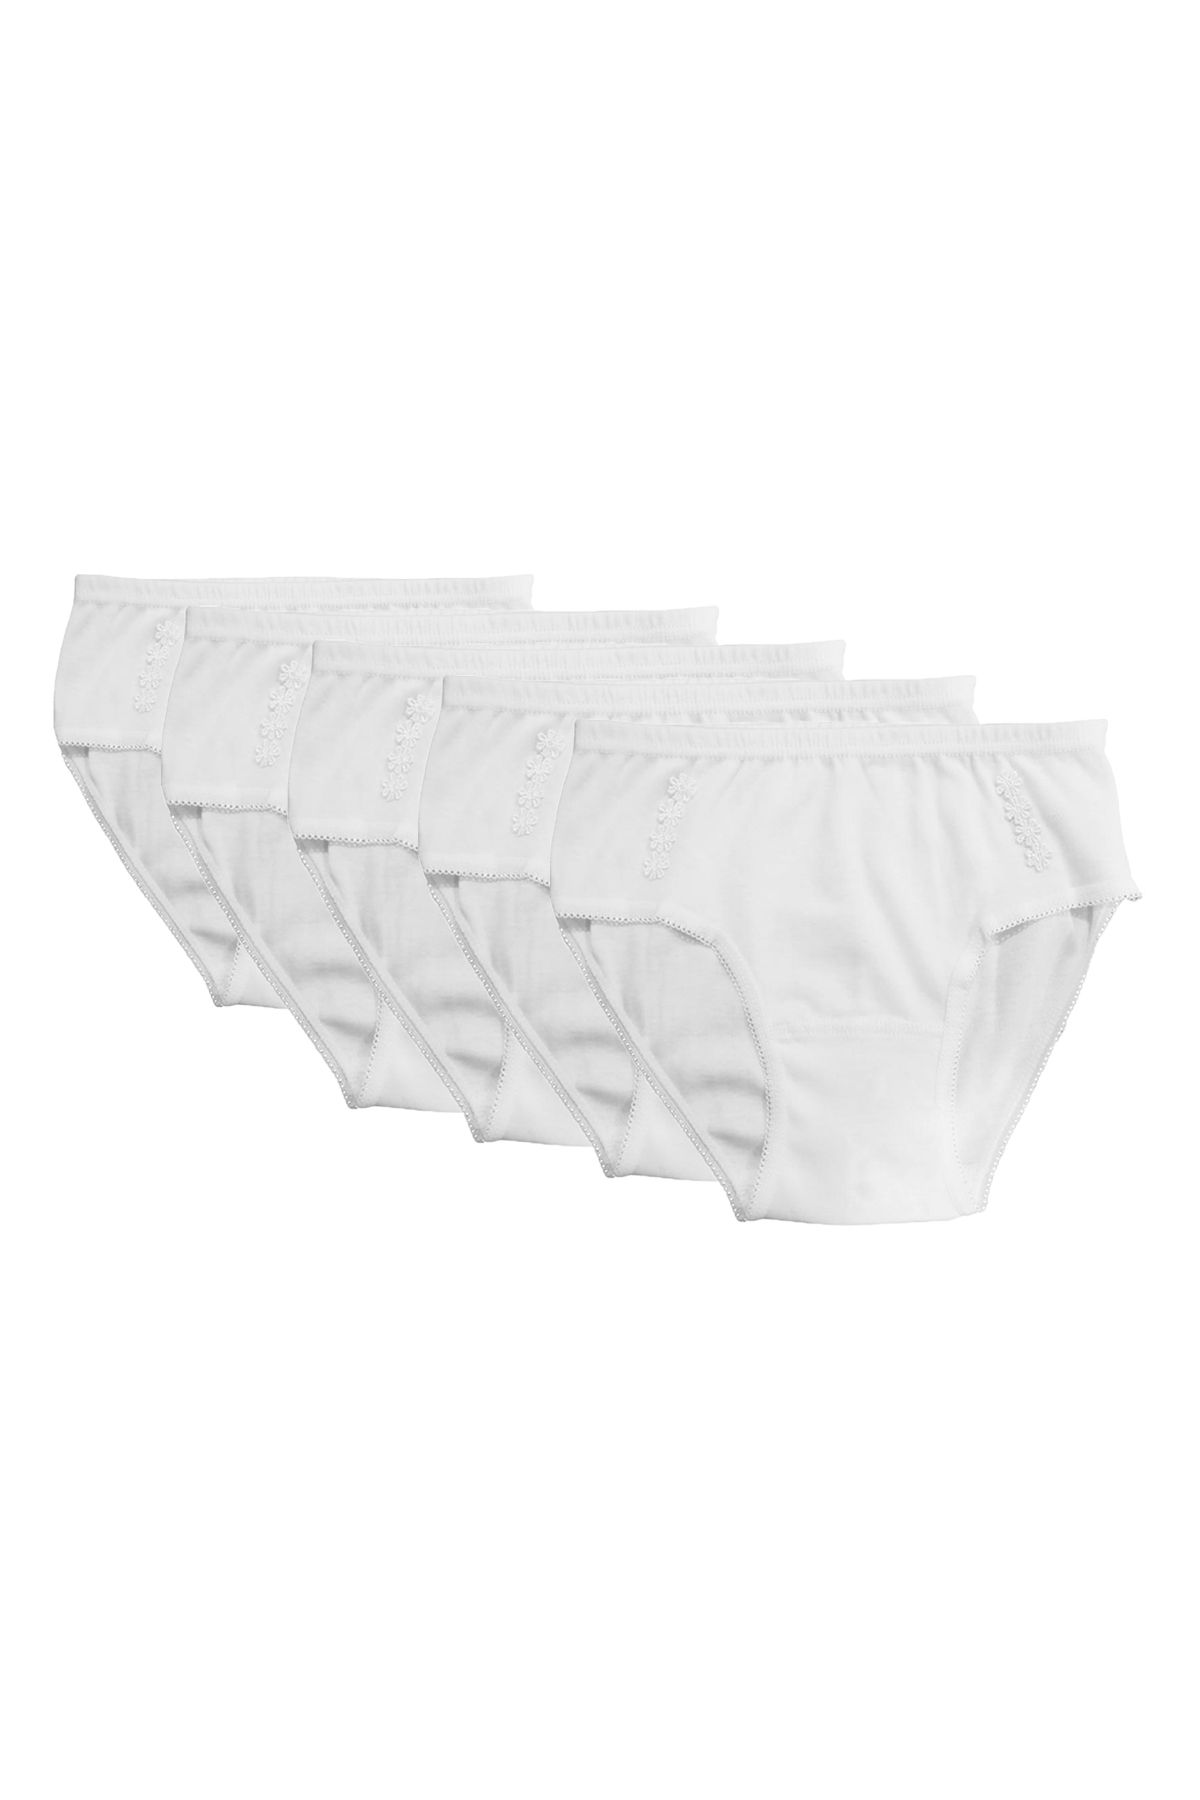 ÖZKAN underwear Özkan 0825 5'li Paket Kız Çocuk %100 Pamuklu Ribana Esnek Rahat Papatya Detaylı Külot